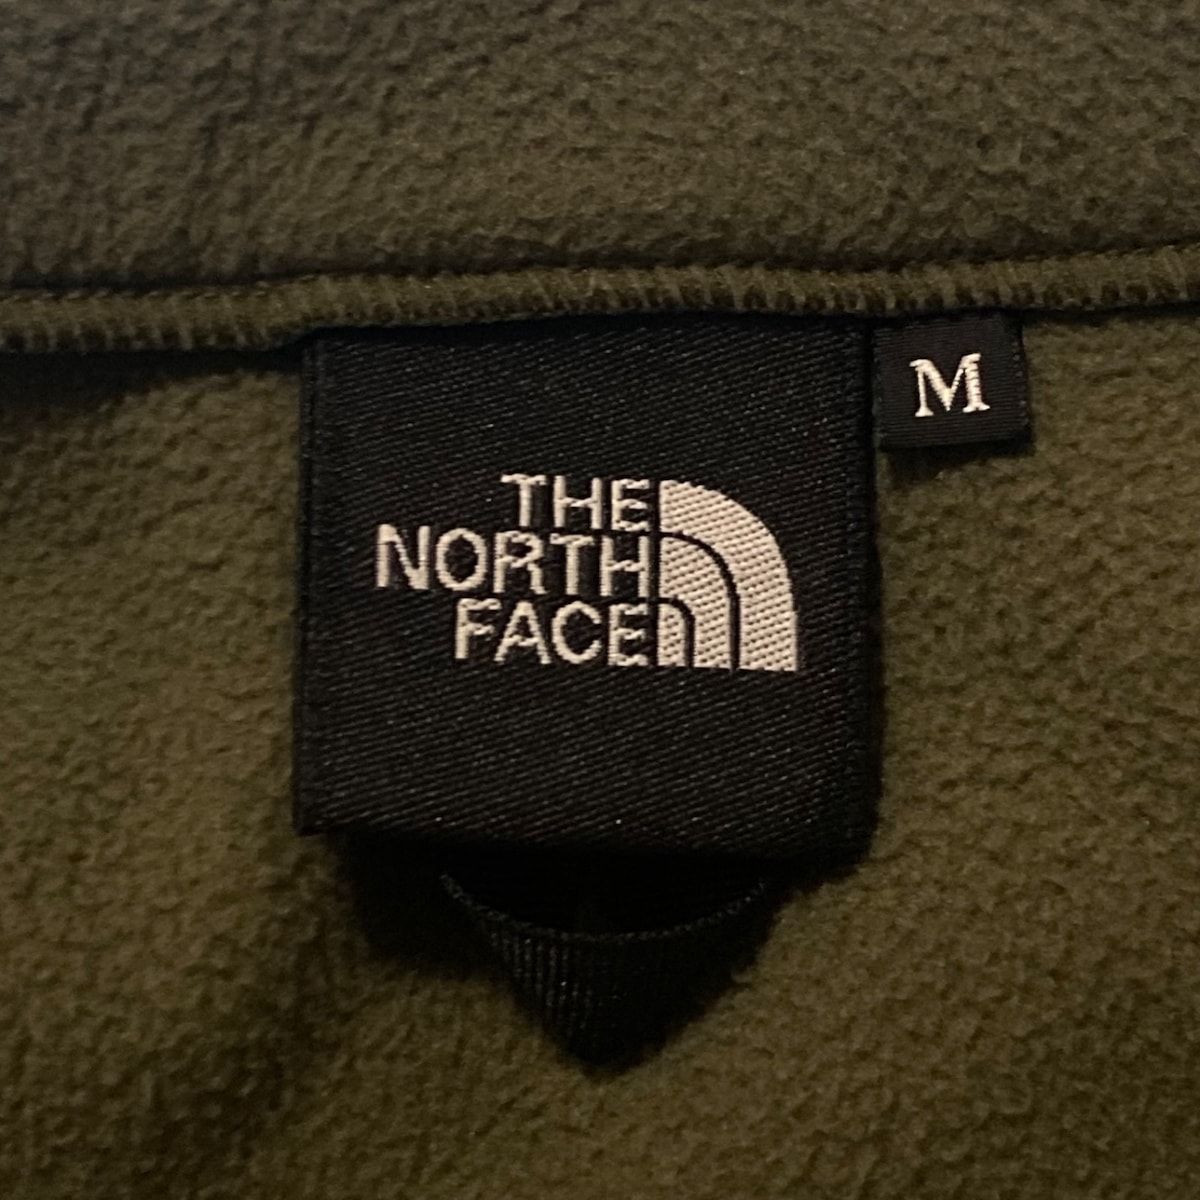 THE NORTH FACE(ノースフェイス) ブルゾン サイズM メンズ - カーキ×黒 